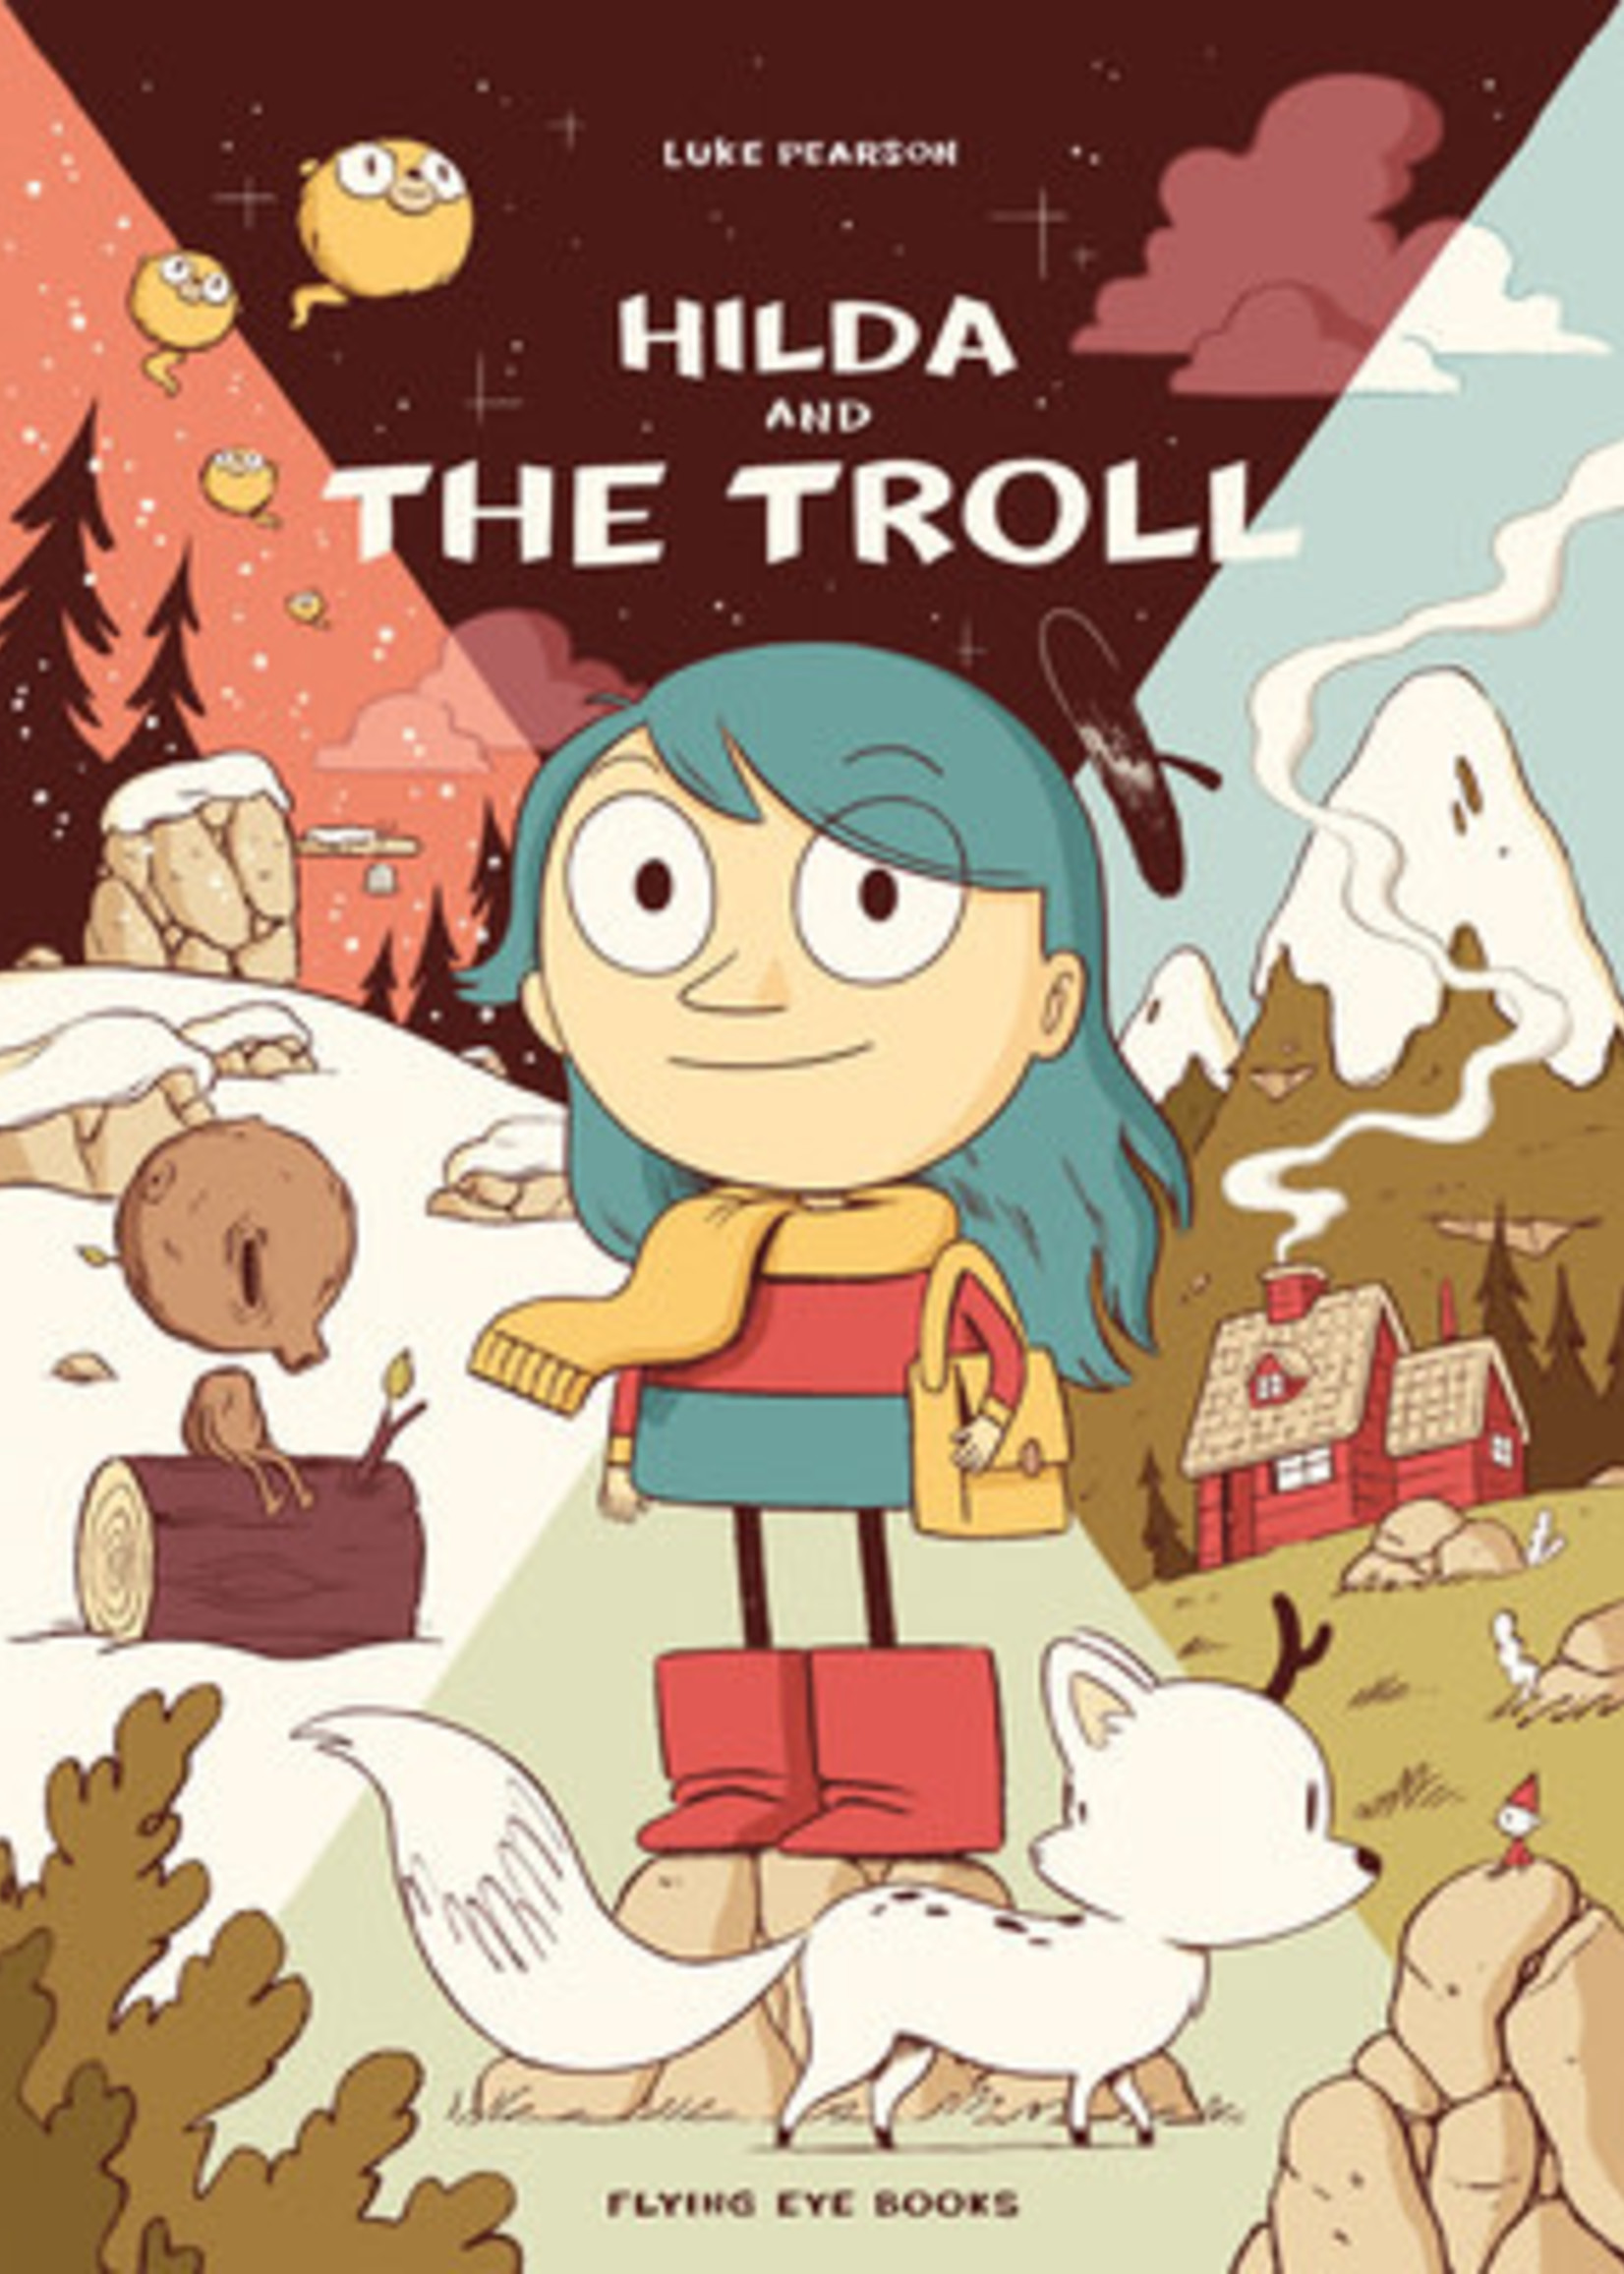 Hilda and the Troll (Hilda #1) by Luke Pearson